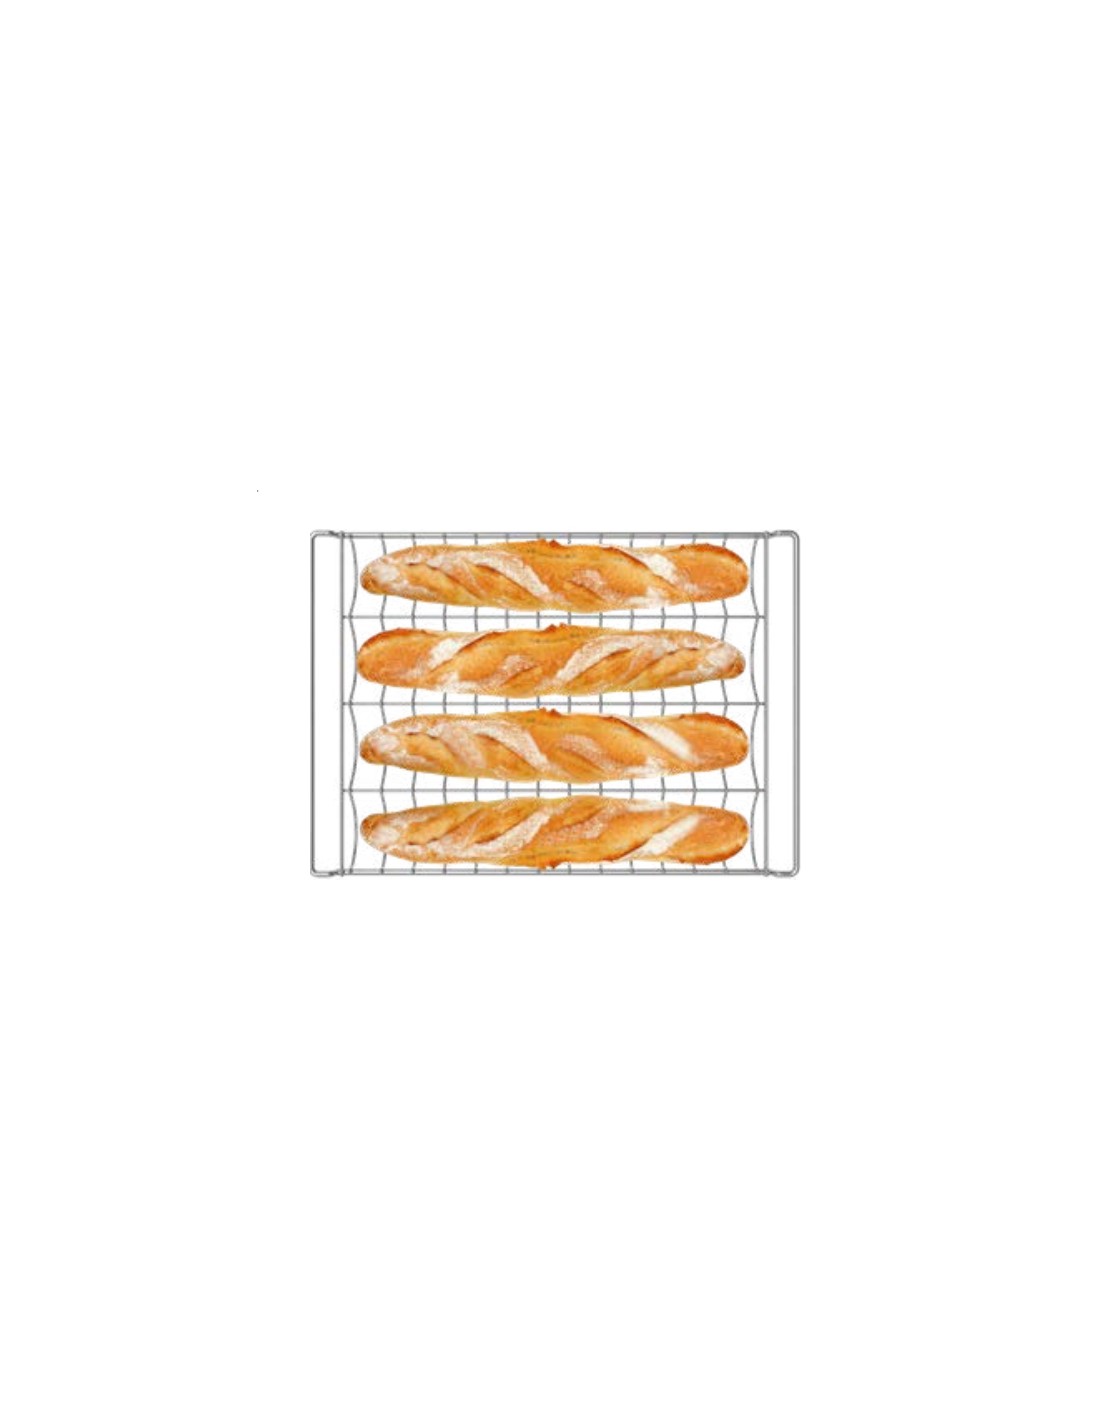 Teglia cromata canalata a 4 canali ultraleggera - Ideale per baguette congelate, filoncini congelati - Fino a 8 mini baguette in